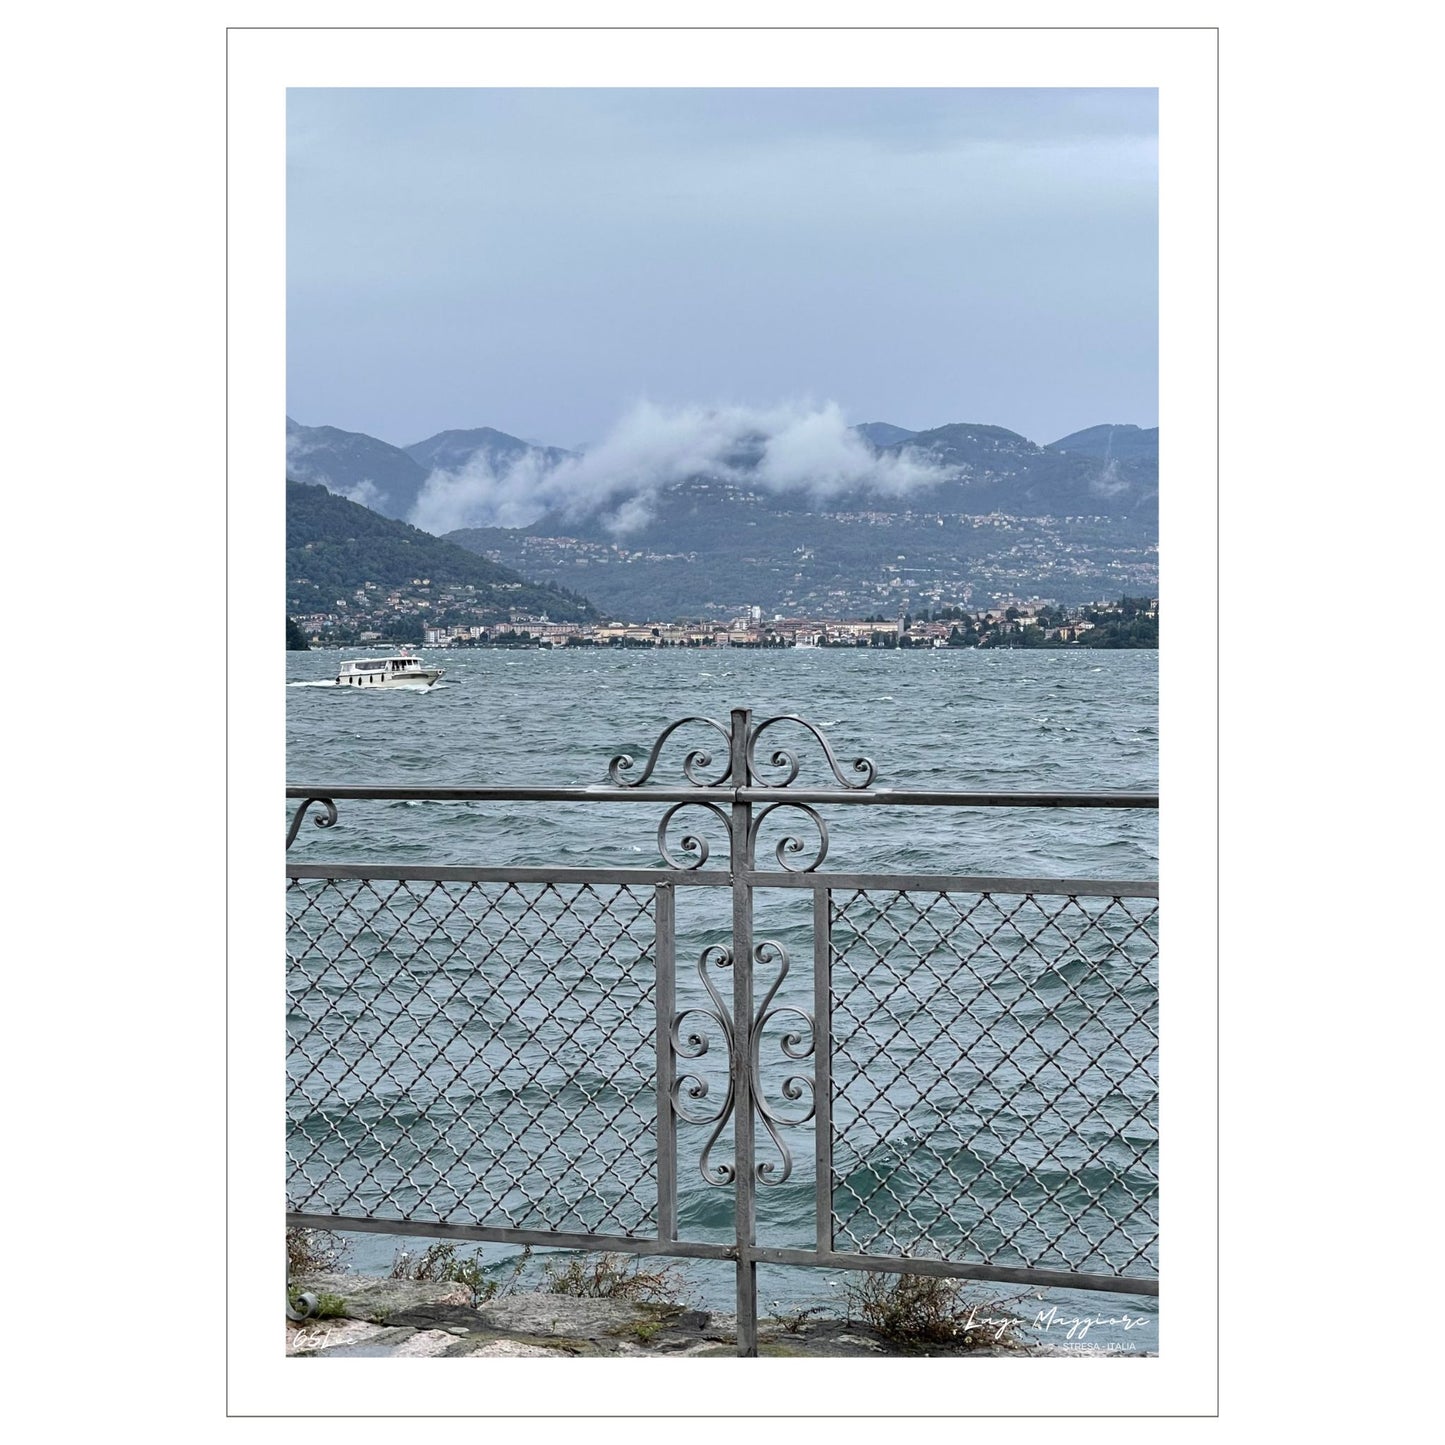 En regntung og vindfull augustdag i Stresa ved Lago Magiore, Piemonte. Det er lavt skydekke og bølger på sjøen. Et gjerde i smijern skiller parken og sjøen. I bakkant skimtes Alpene og byen Verbania.  